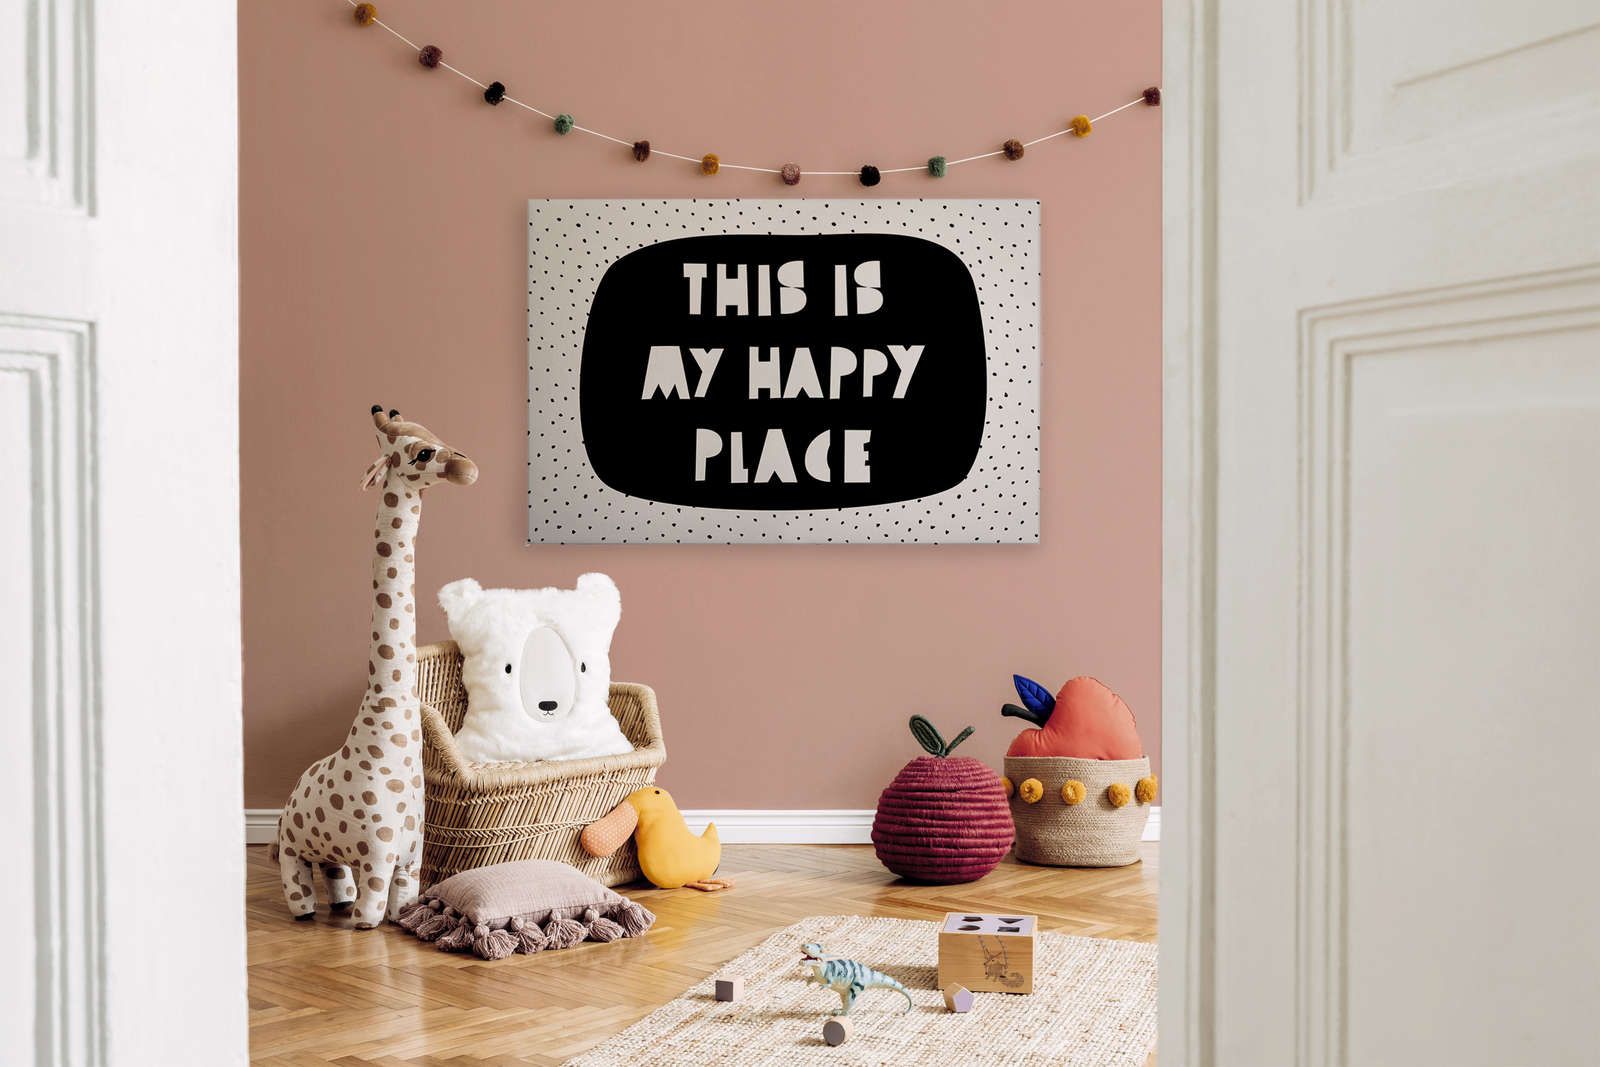             Canvas voor kinderkamer met opschrift "This is my happy place" - 120 cm x 80 cm
        